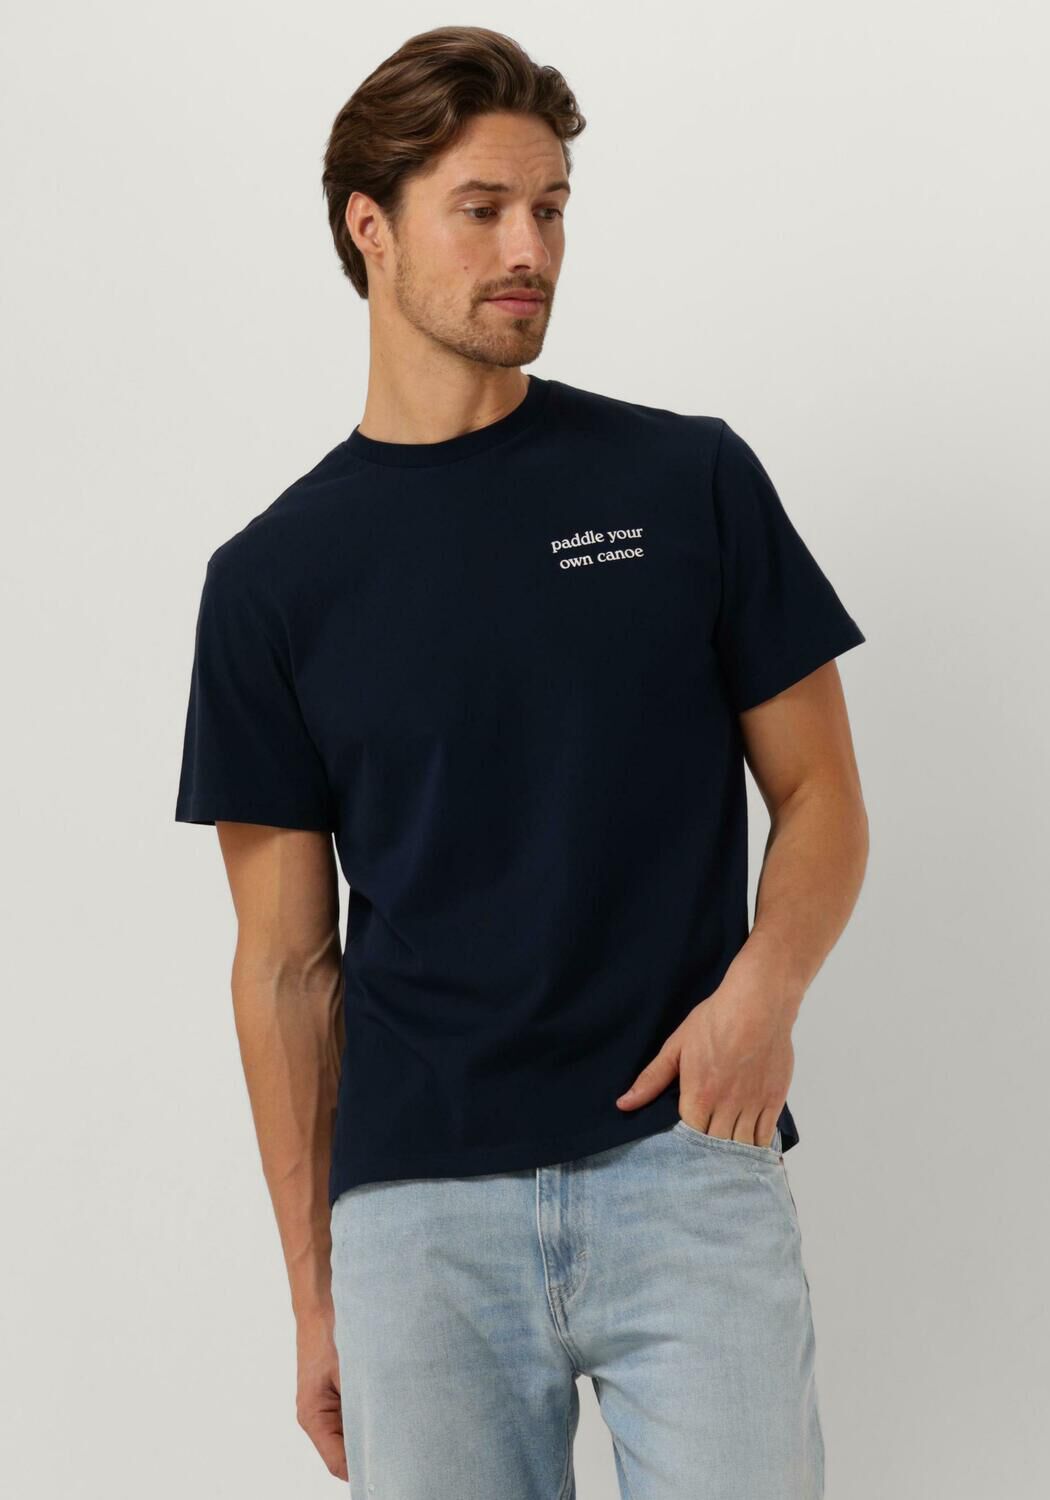 FORÉT Forét Heren Polo's & T-shirts Tip T-shirt Donkerblauw